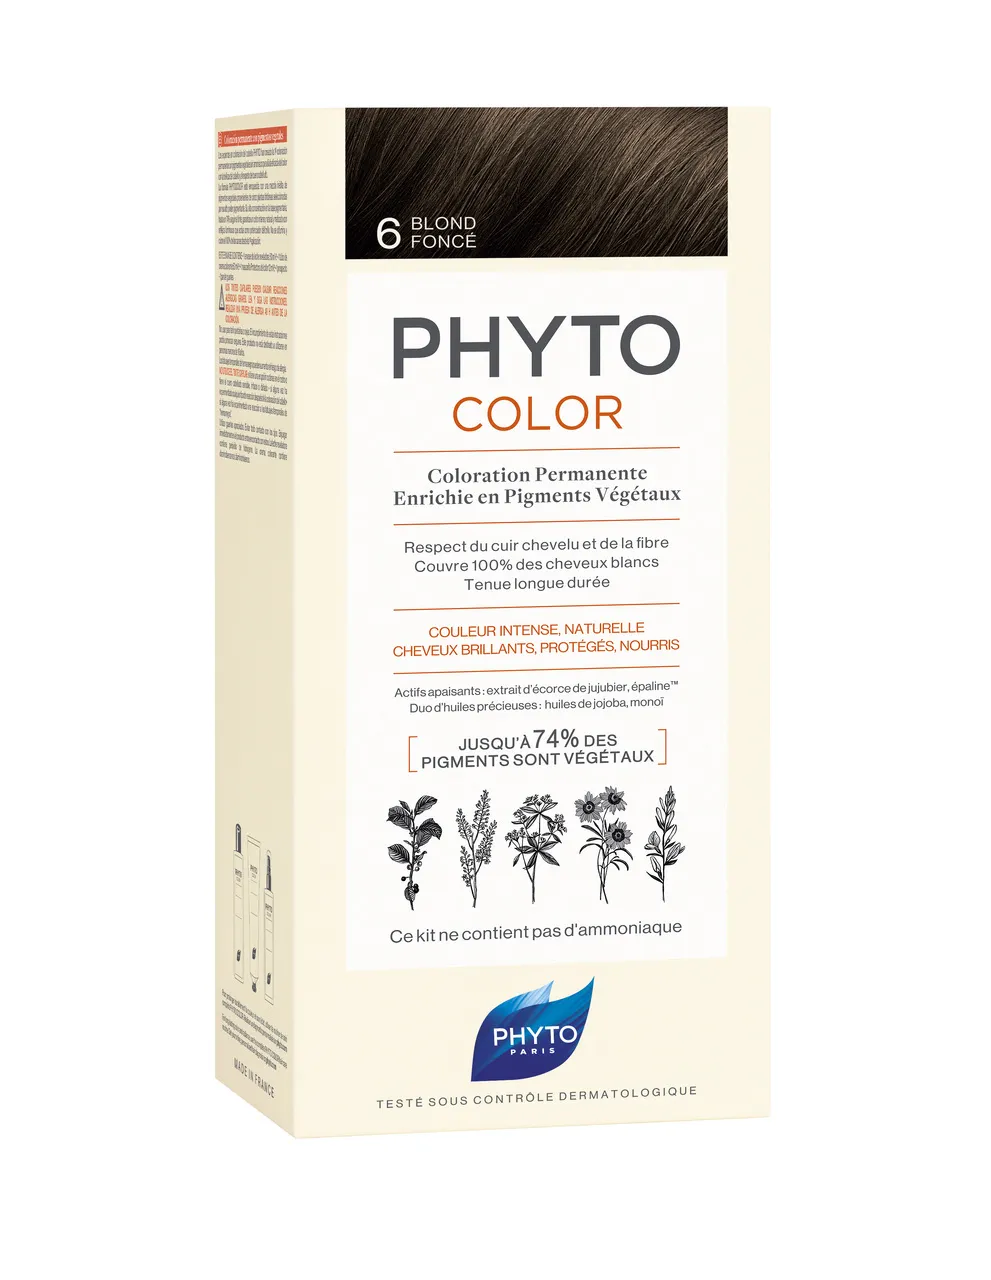 Phyto Color, farba do włosów, 6 ciemny blond, 1 opakowanie